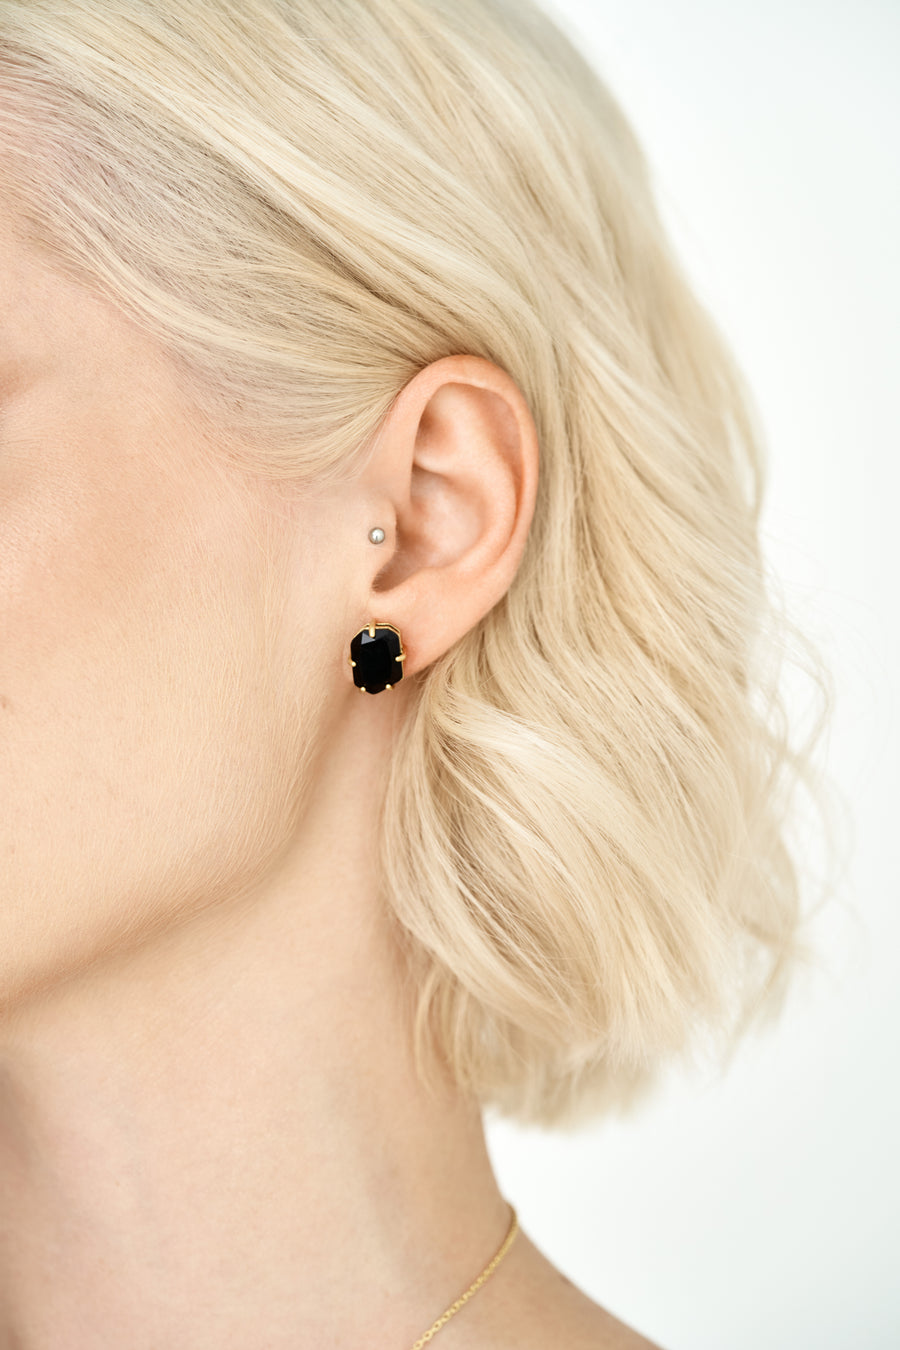 Black onyx pentagon 14K stud earrings